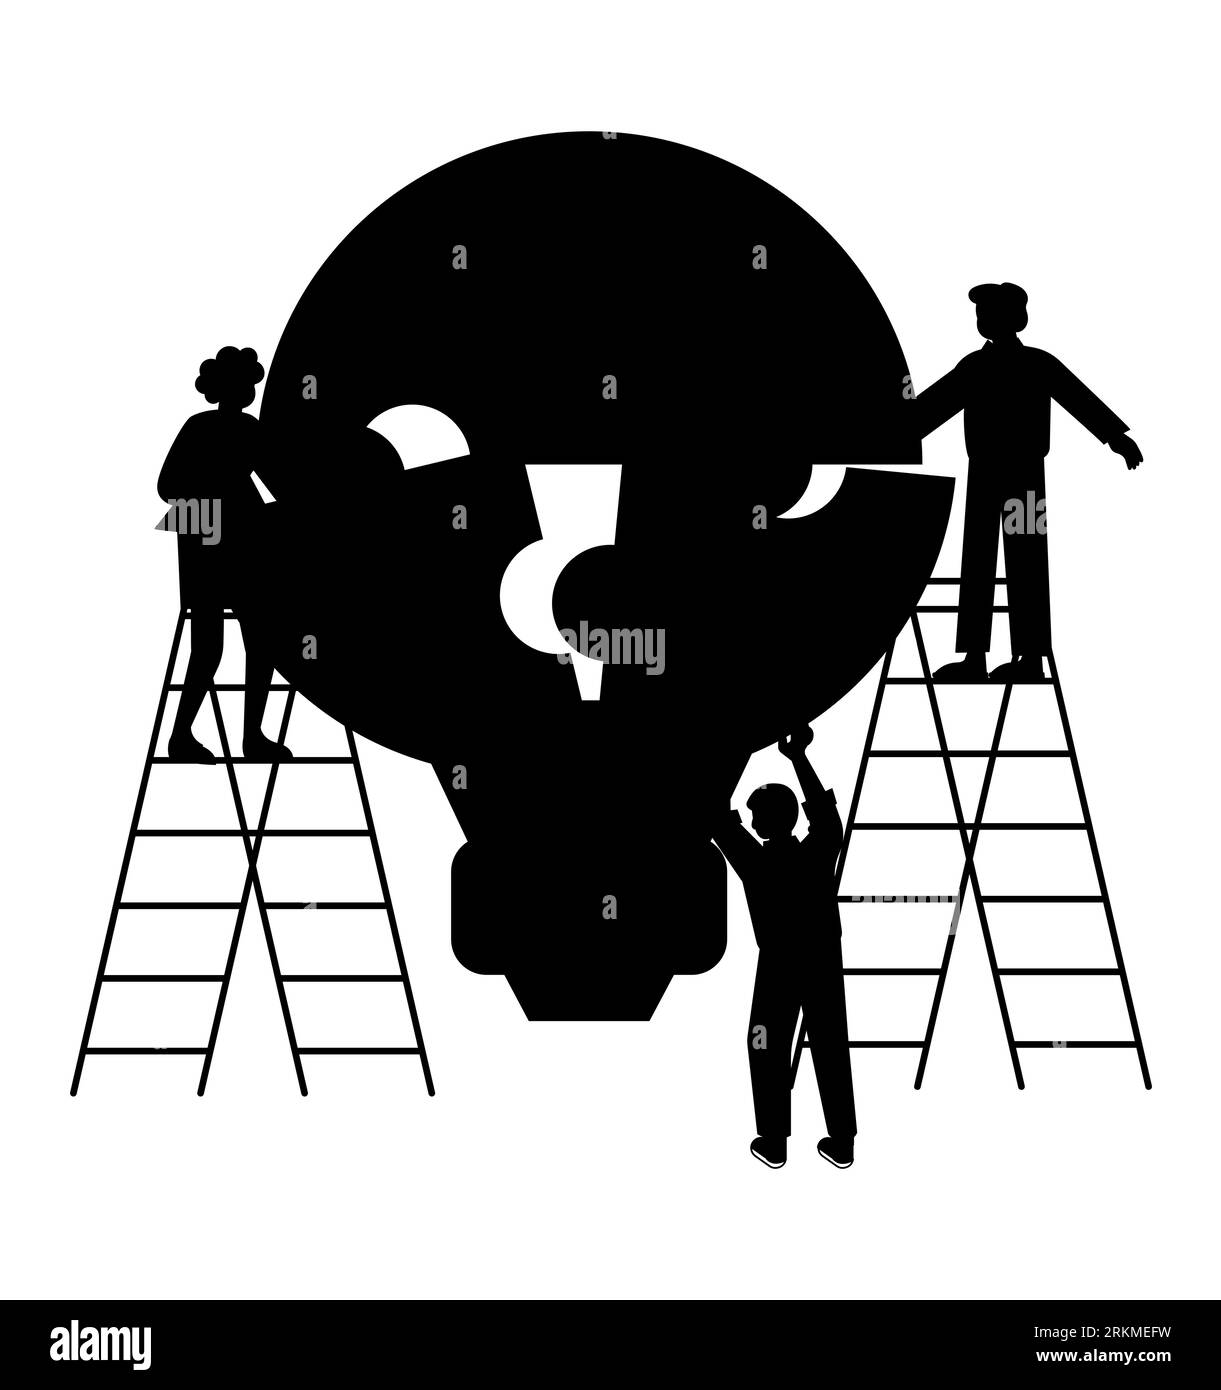 Schwarze Silhouette von Kollegen mit Puzzleteilen einer Glühbirne, Gruppe von Mitarbeitern, die Kreativität und Strategieentwicklung zeigen, neue Ideen entwickeln, Teamarbeit Stock Vektor